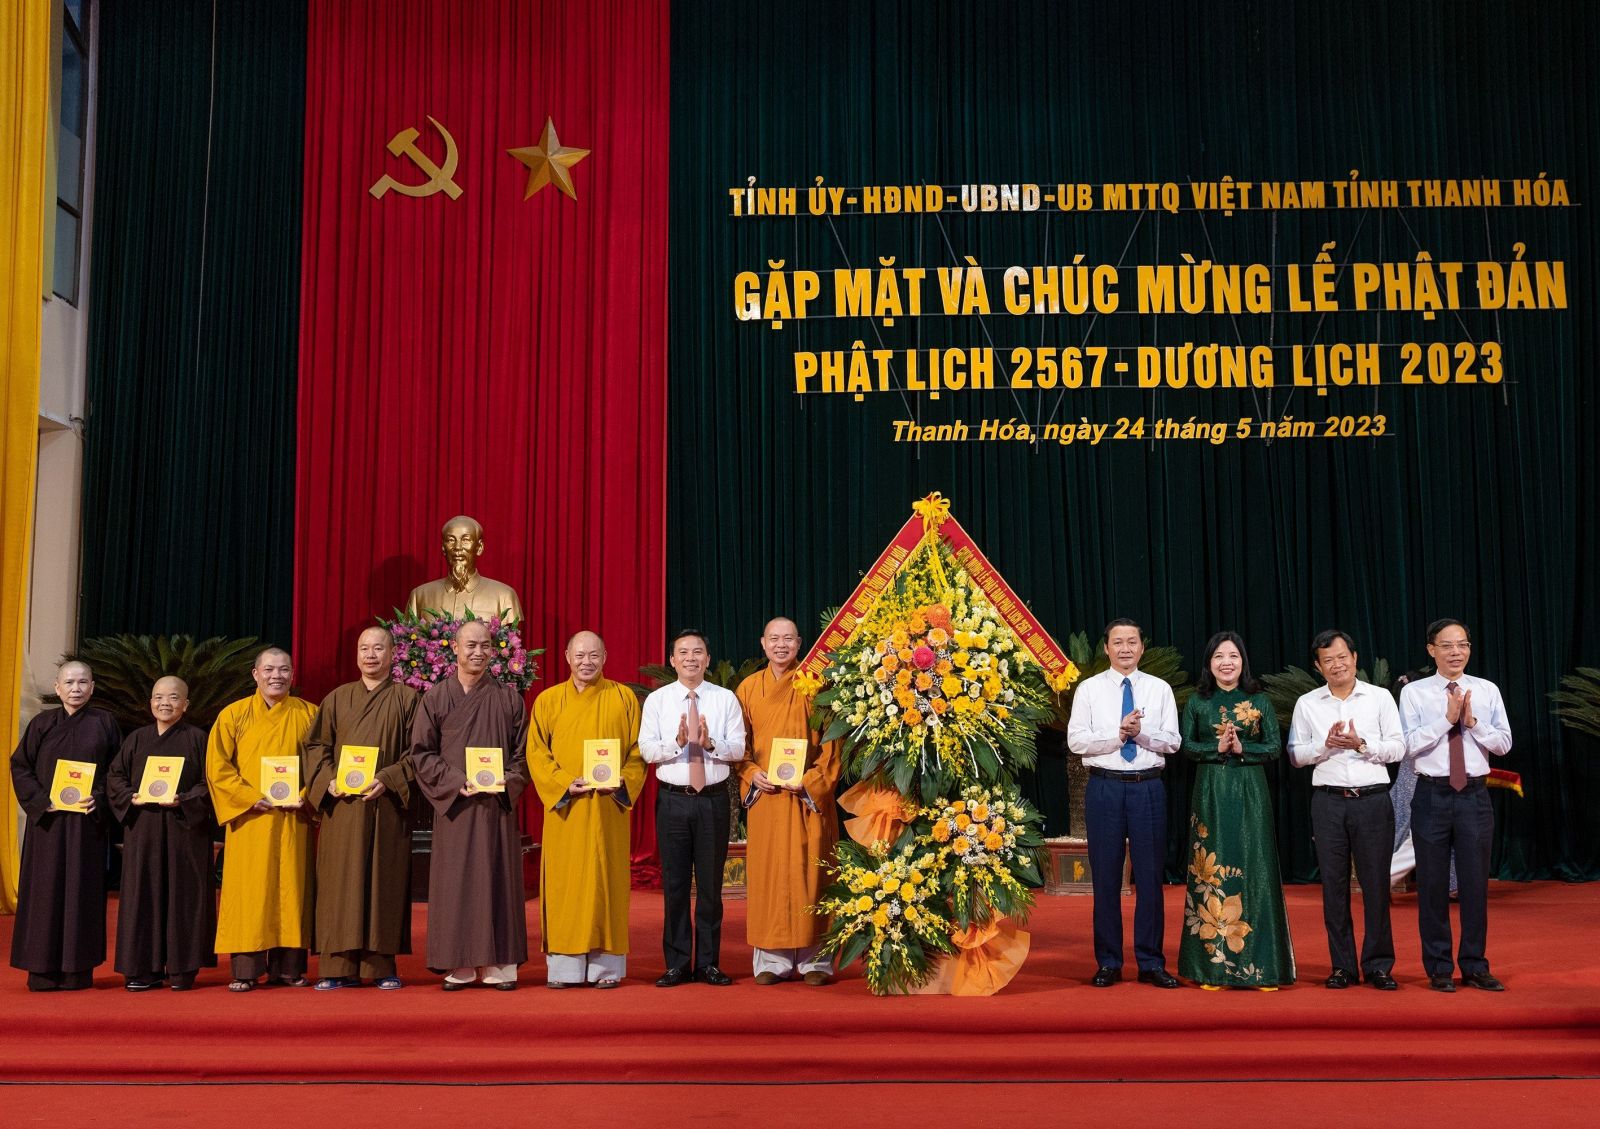 Lãnh đạo tỉnh gặp mặt và chúc mừng Ban trị sự Phật giáo nhân Đại lễ Phật đản PL 2567 – DL 2023